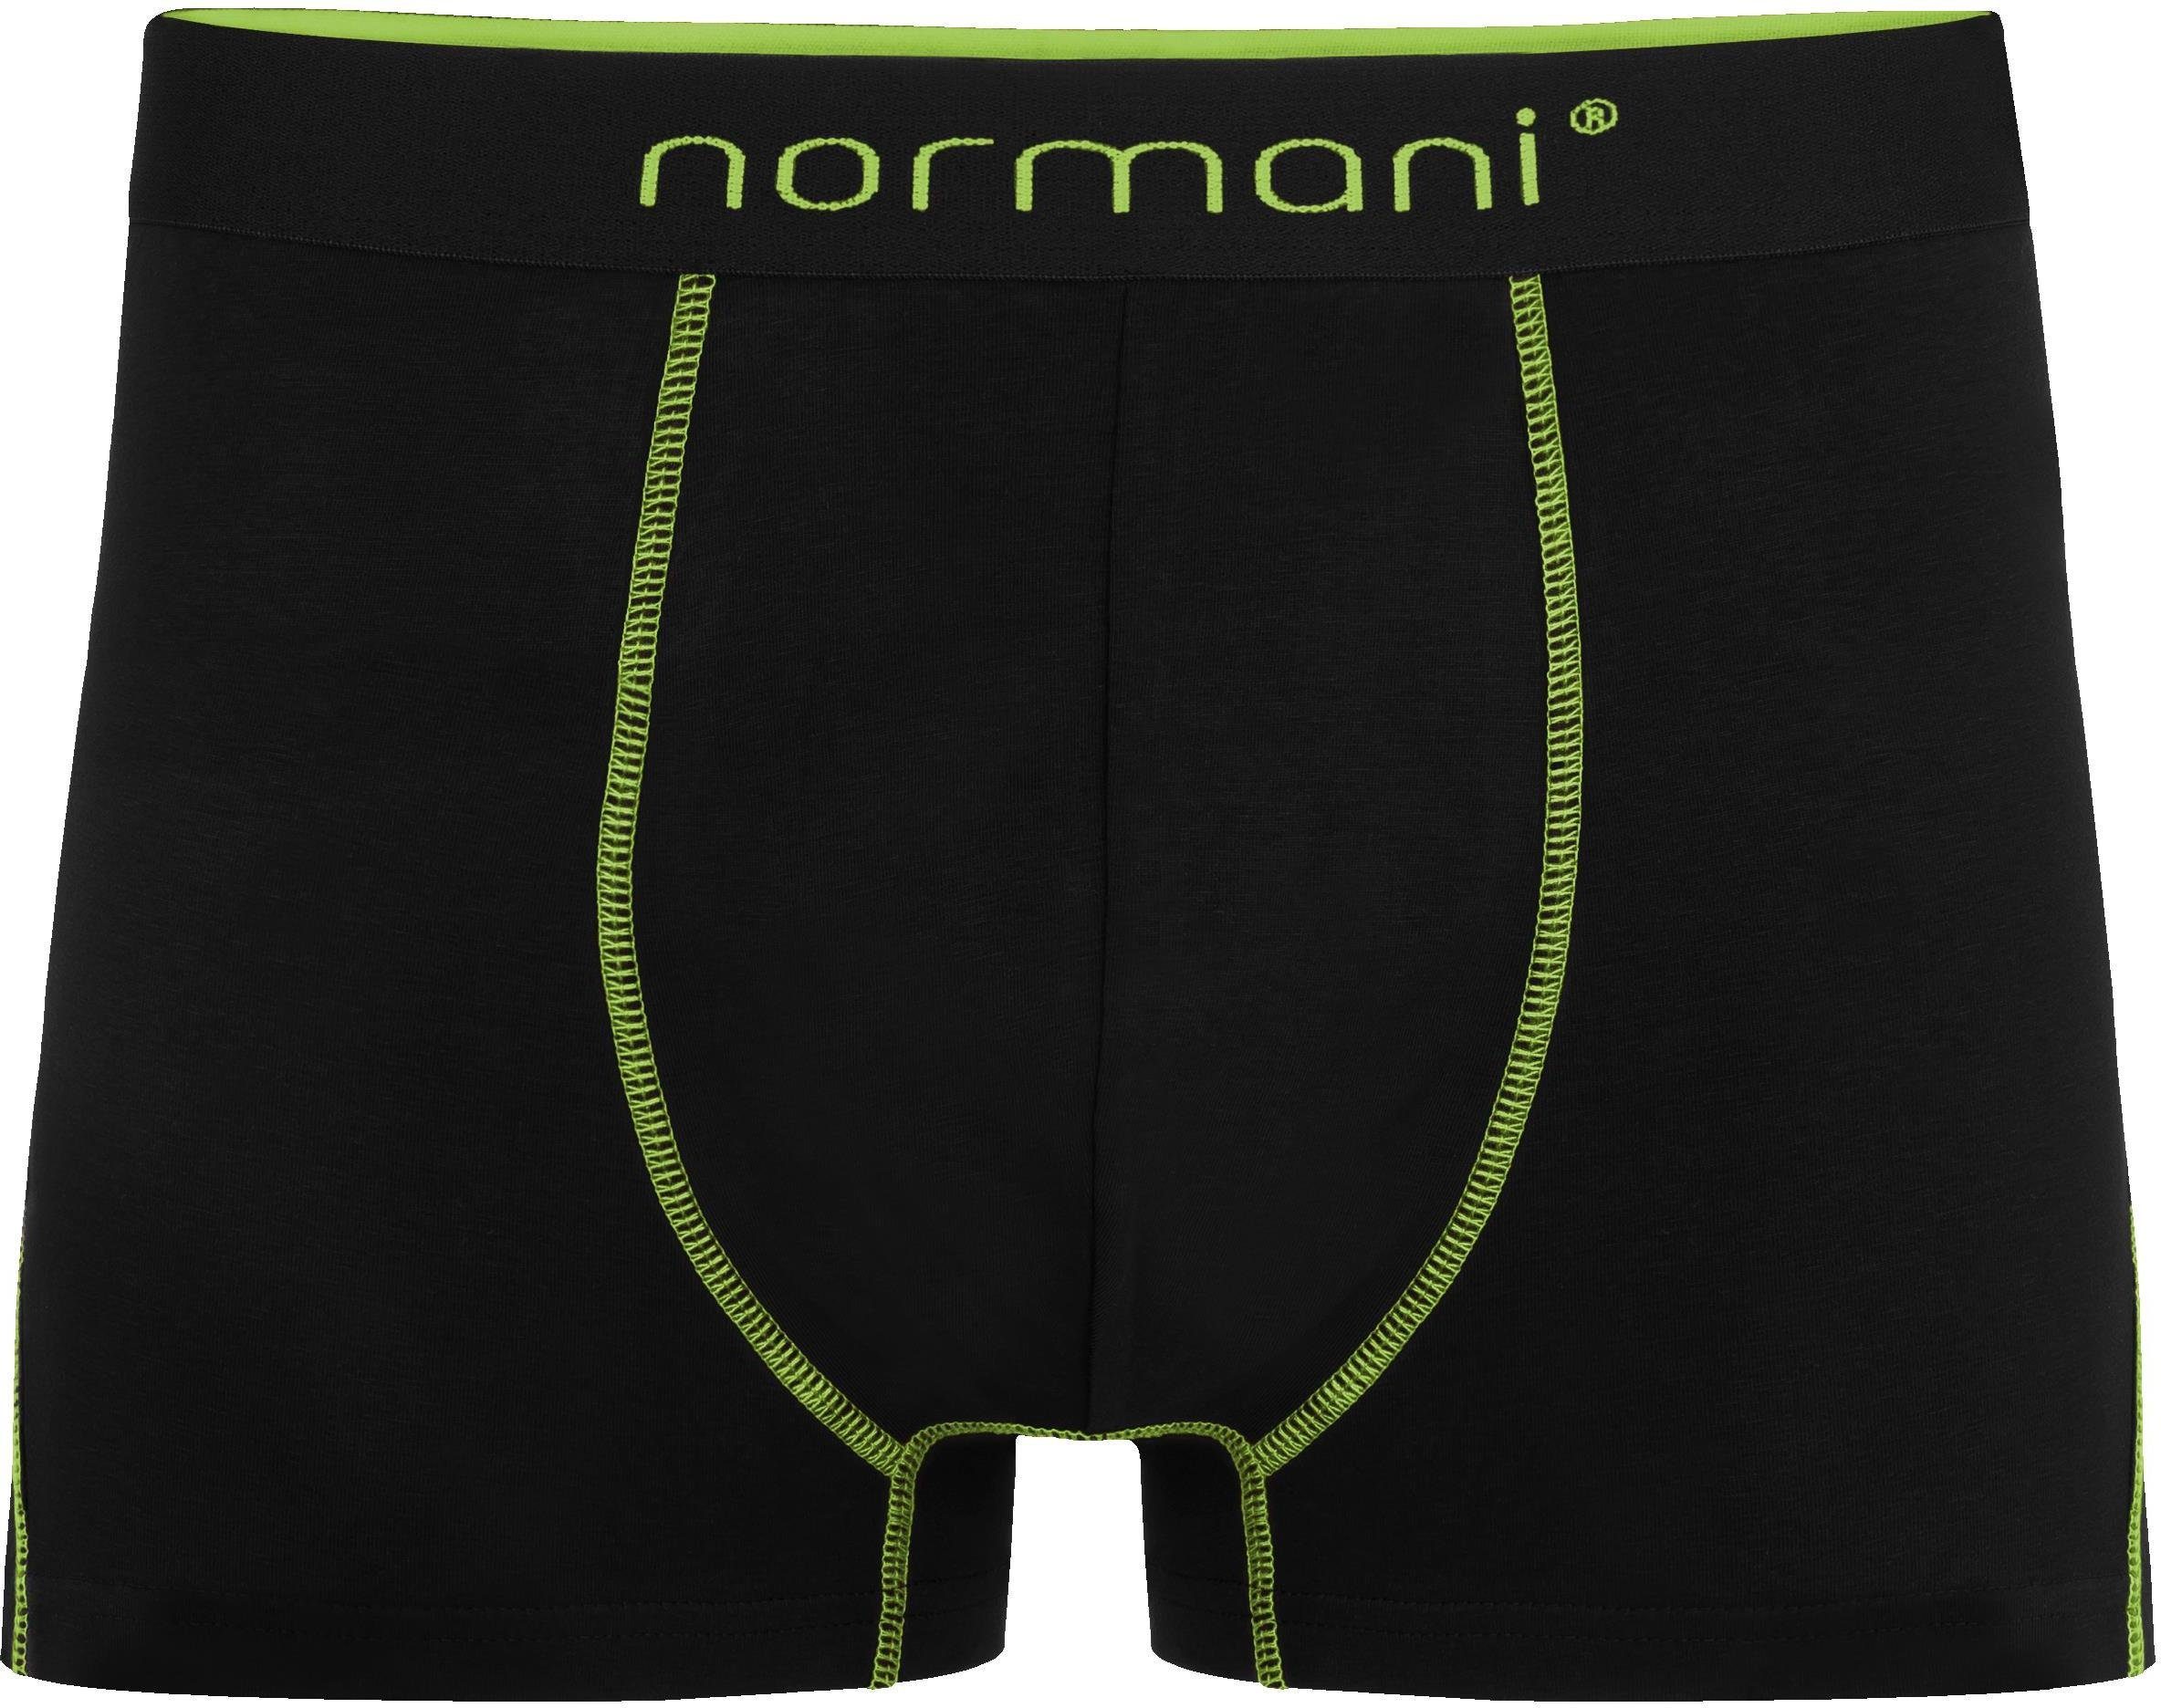 6 Baumwolle Unterhose Herren Baumwoll-Boxershorts Männer atmungsaktiver Boxershorts normani aus für Gelb/Grün/Rot